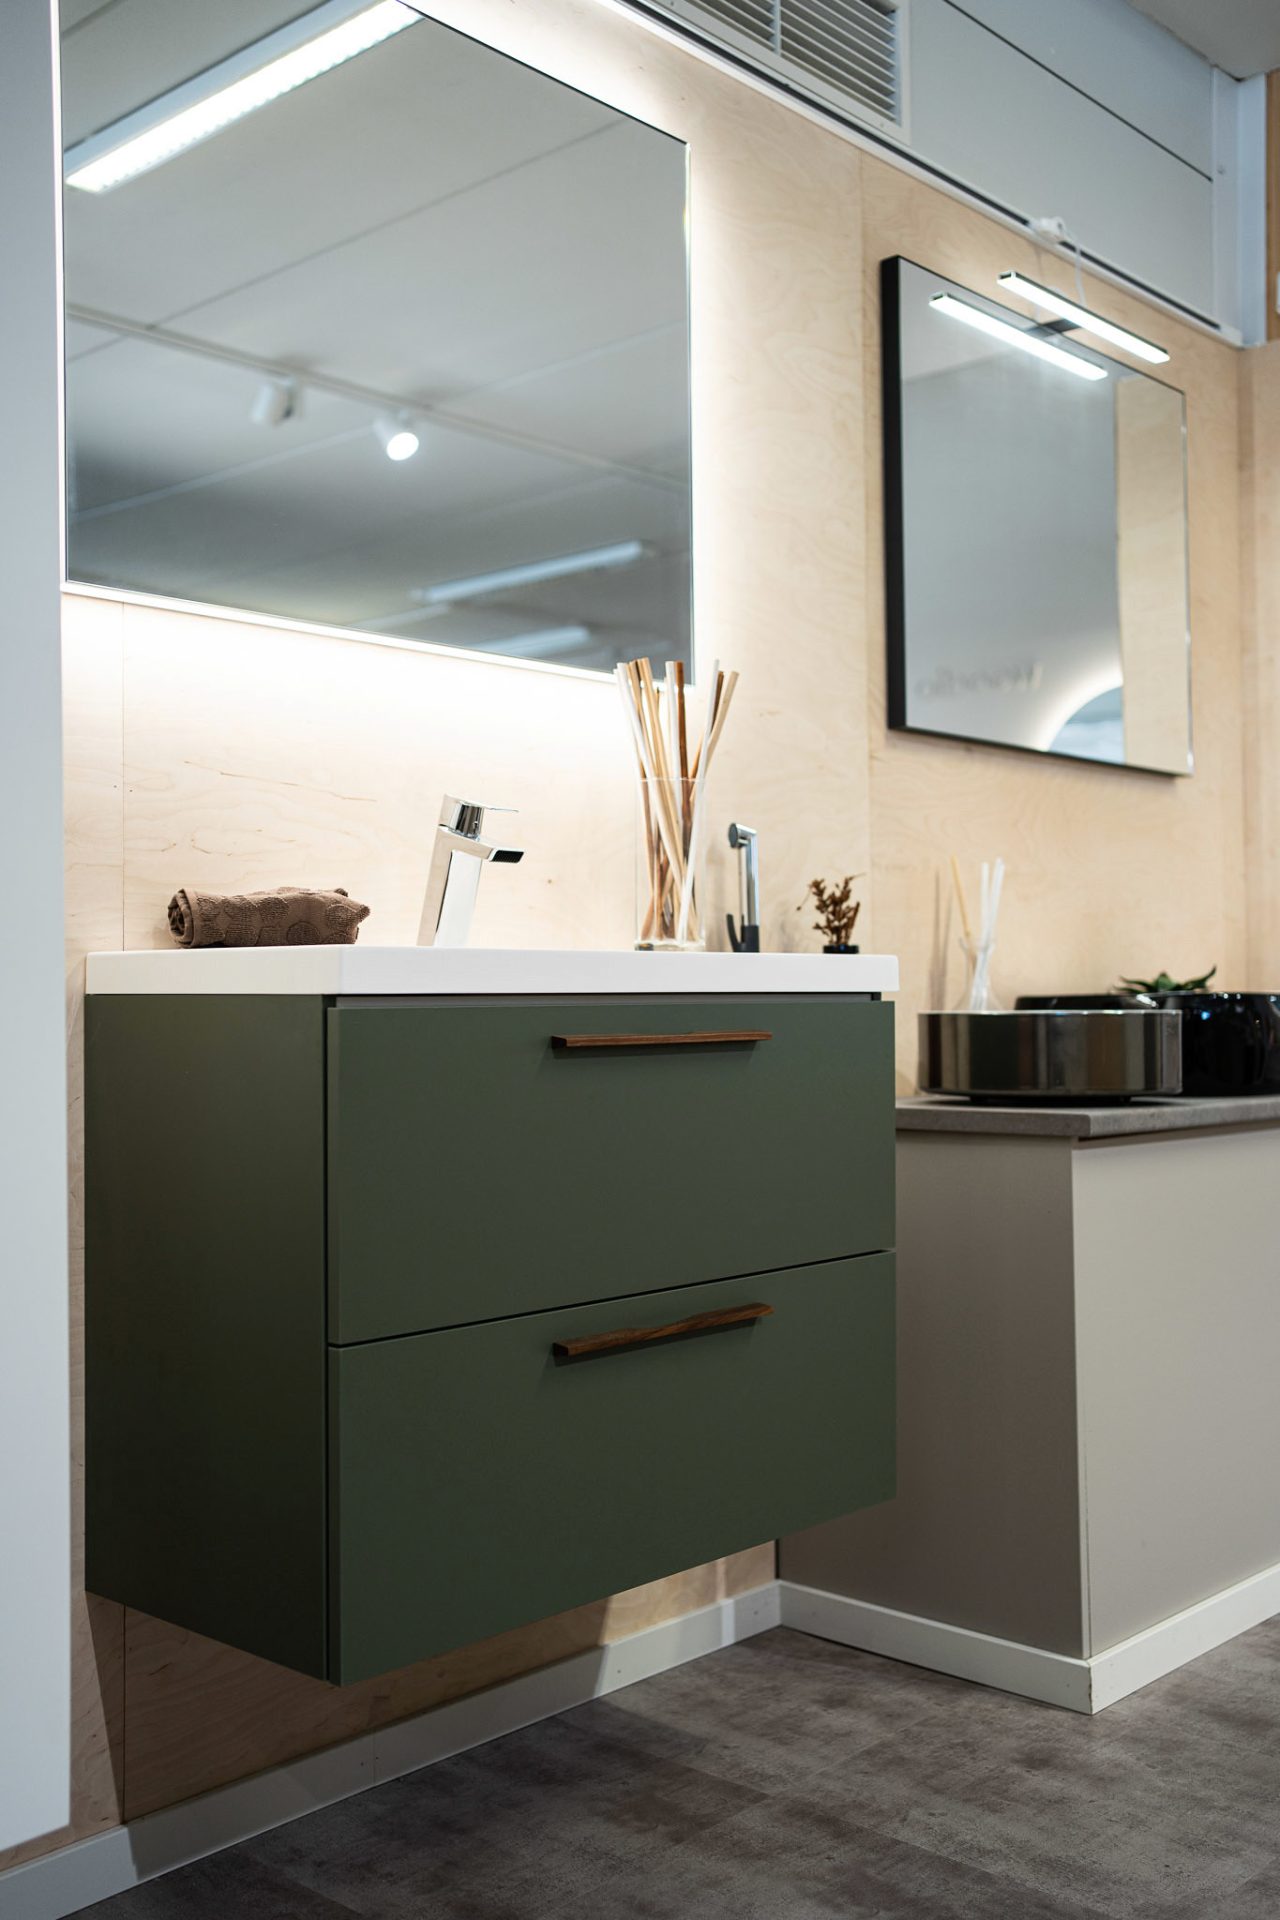 Vihreä wc-kalustus on Unique Homen omaa tuotantoa ja valmistettu Turussa. Sekä kalusterungoissa että -ovissa on sävynä Smoke Green, joka on yksi vakiovaihtoehdoistamme ja tarjolla nopeaan toimitukseen. Mallikalustus on esillä myymälässämme Orikedolla.